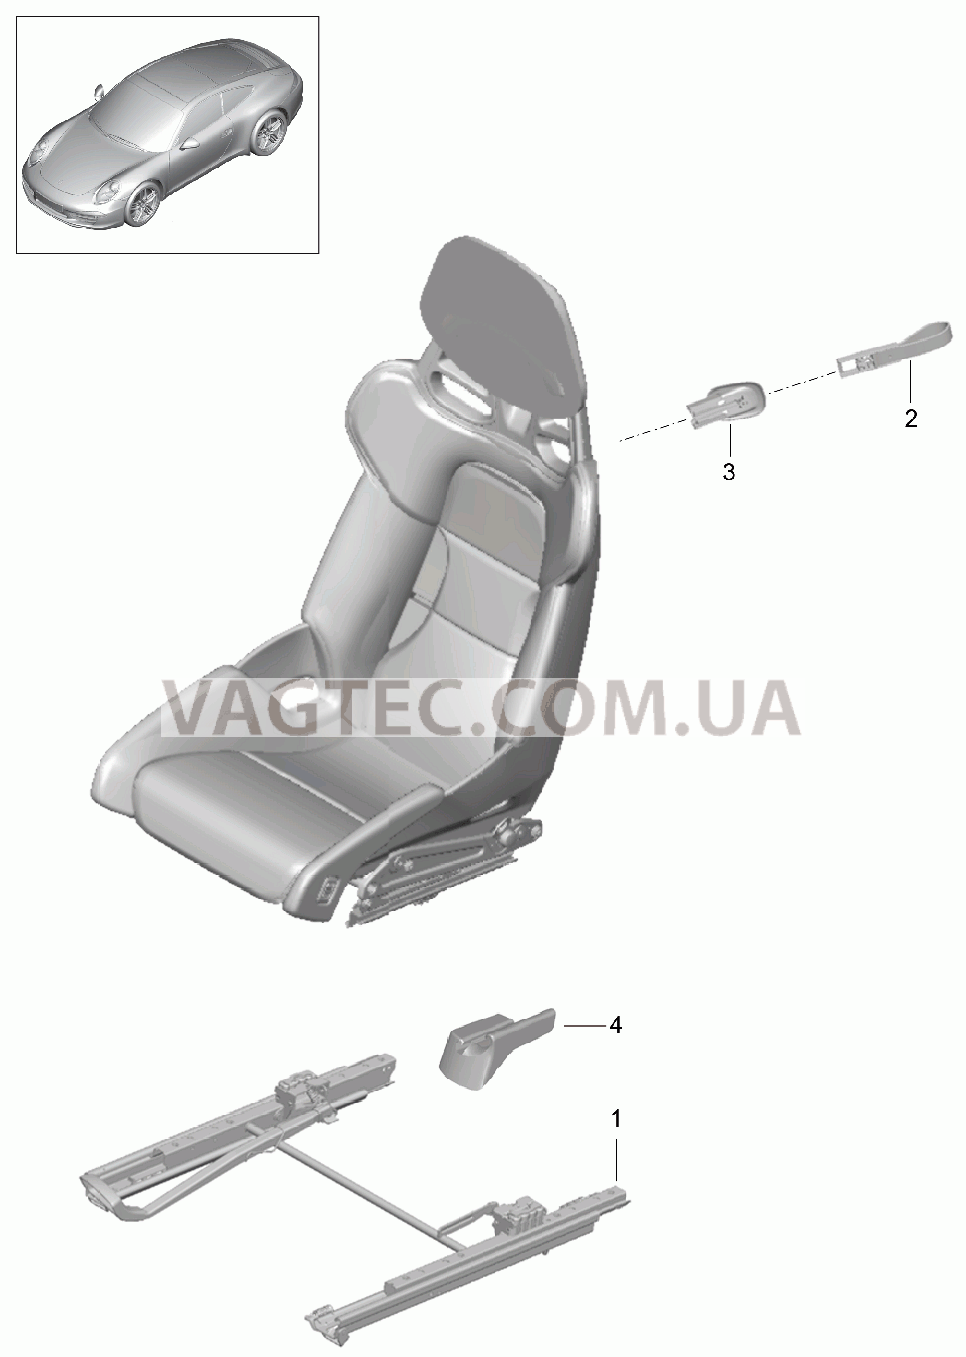 817-030 Ковшеобразное сиденье, складной, полный, Не поставляется для PORSCHE 911.Carrera 2012-2016USA